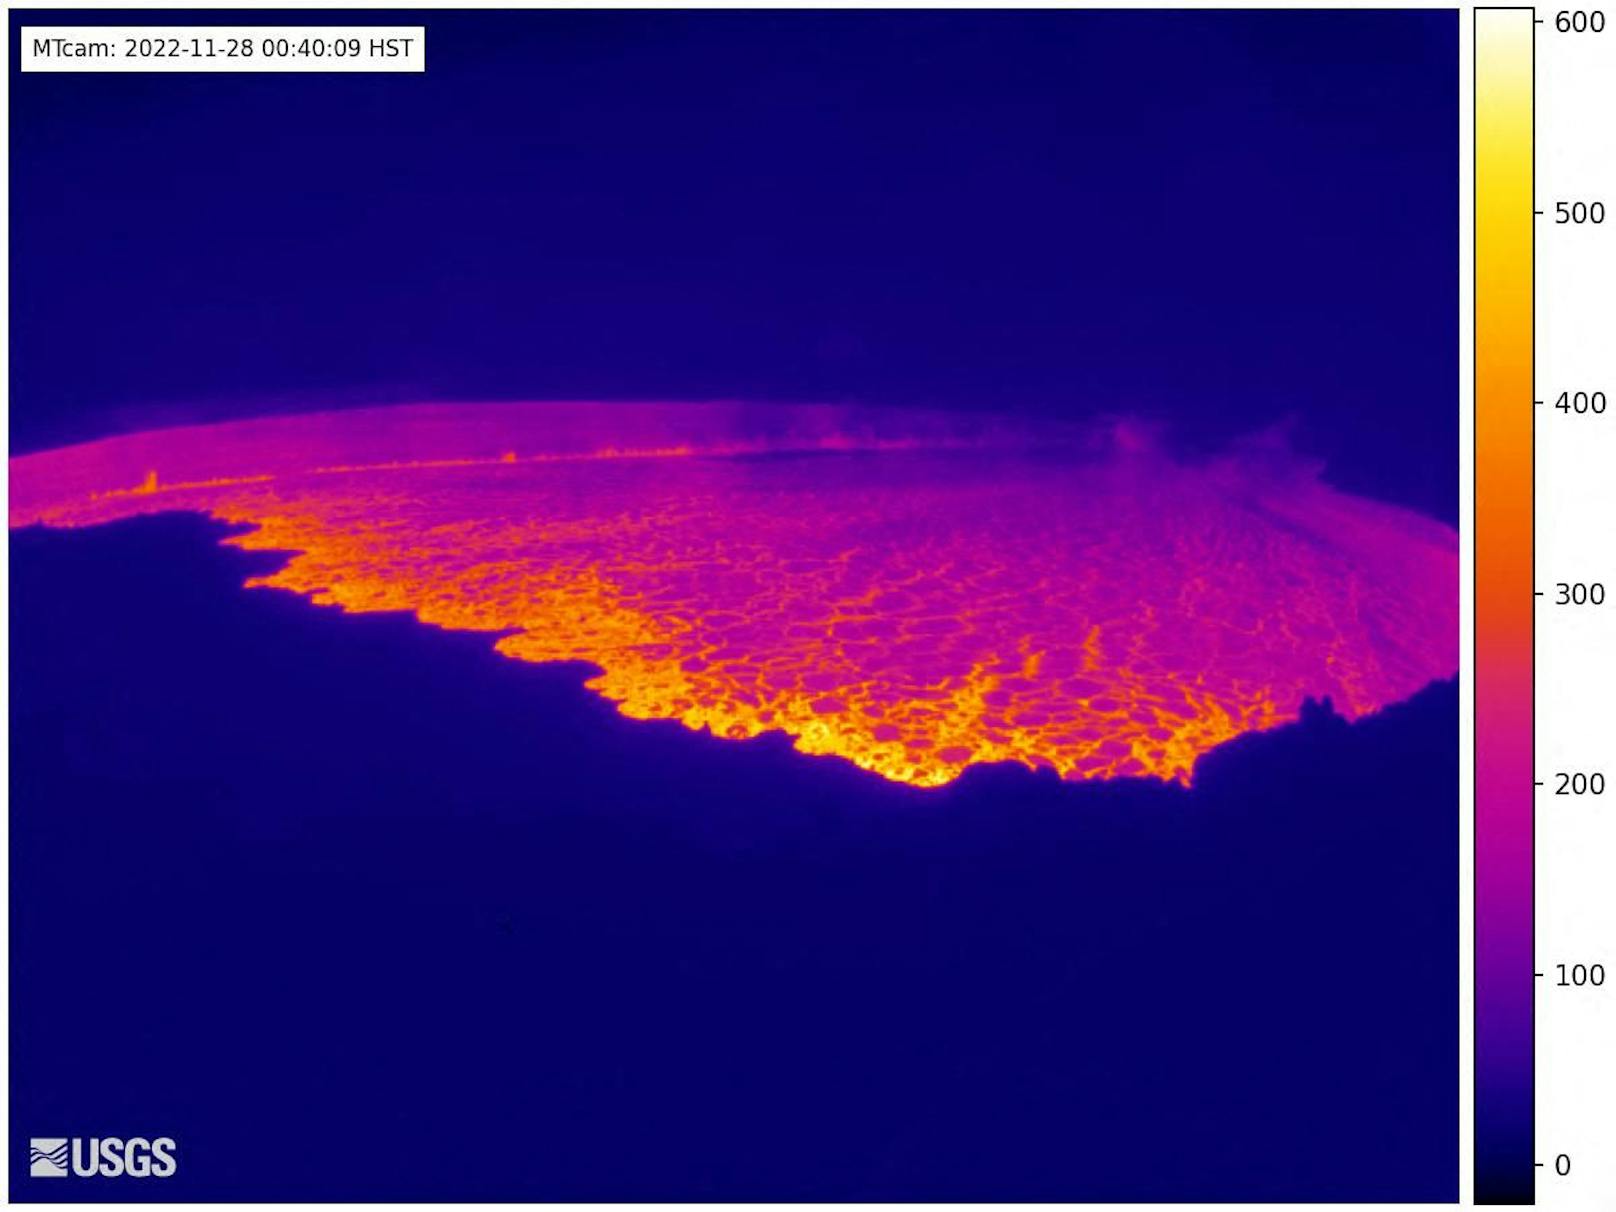 National Weather Service veröffentlichte Bild zeigt eine Webcam-Ansicht des Vulkans Mauna Loa auf Hawaii, der zum ersten Mal seit fast 40 Jahren ausbricht.